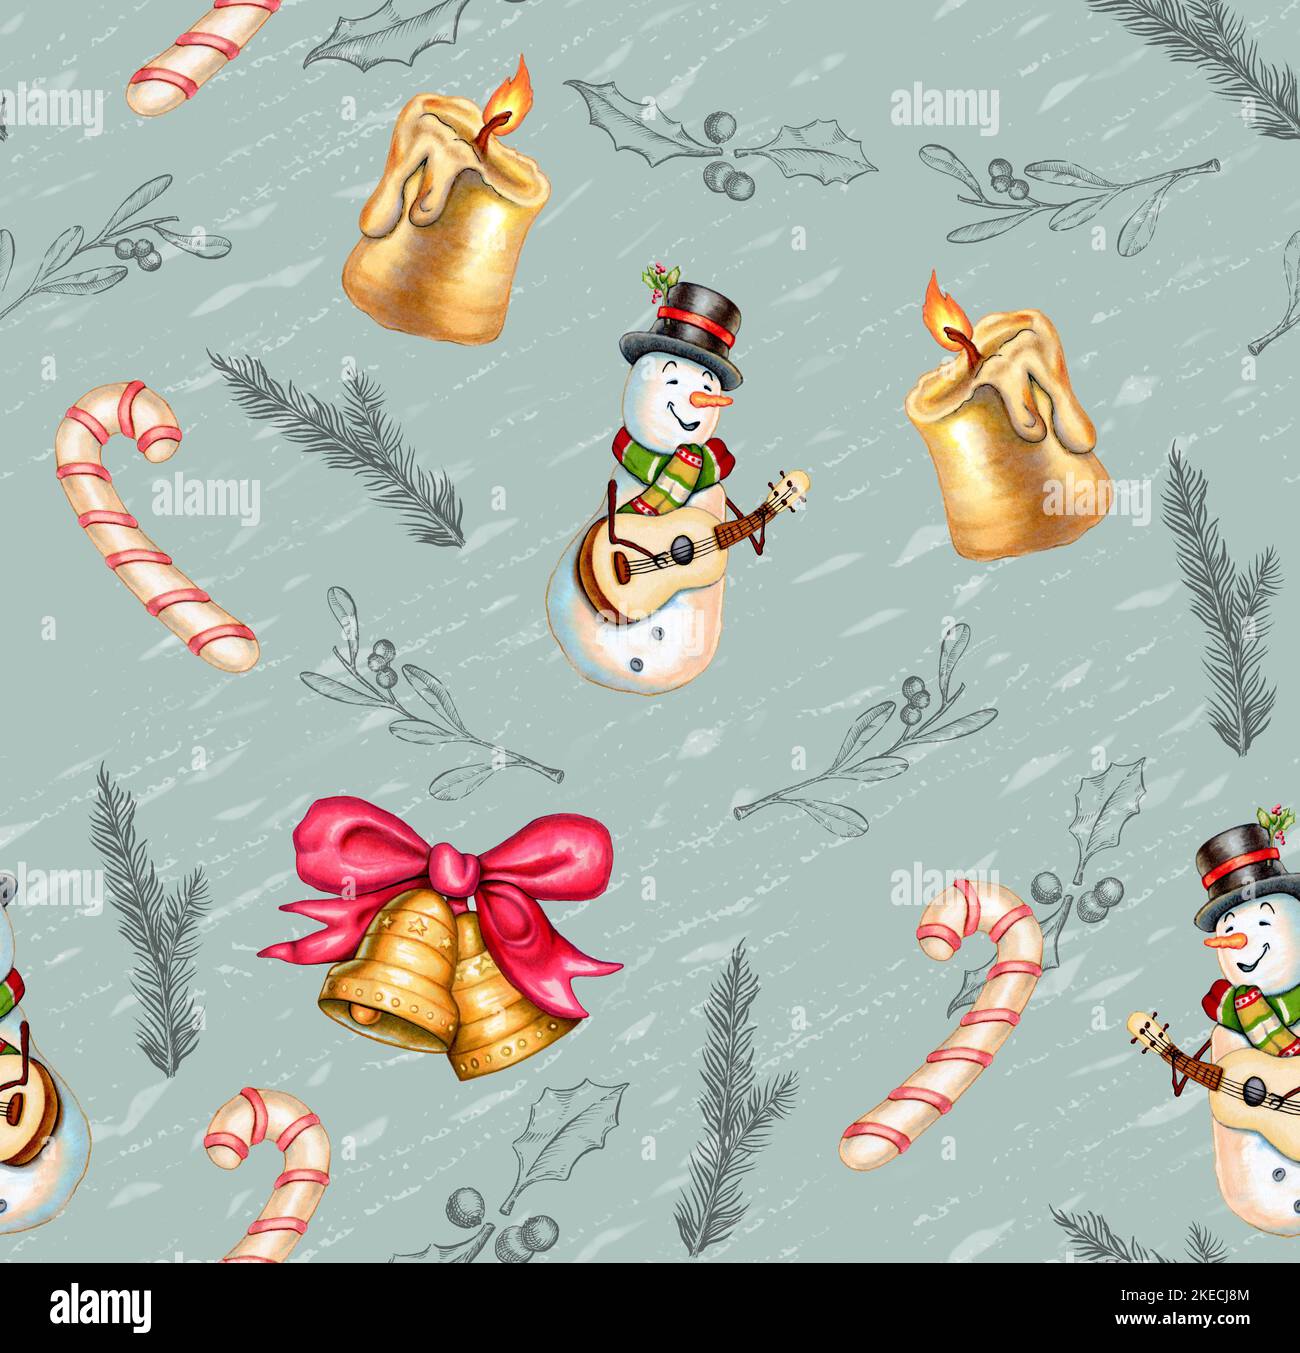 Patrón de Navidad con decoraciones dibujadas a mano que incluyen muñecos de nieve, velas, bastones de azúcar y campanas. Ilustración digital. Foto de stock